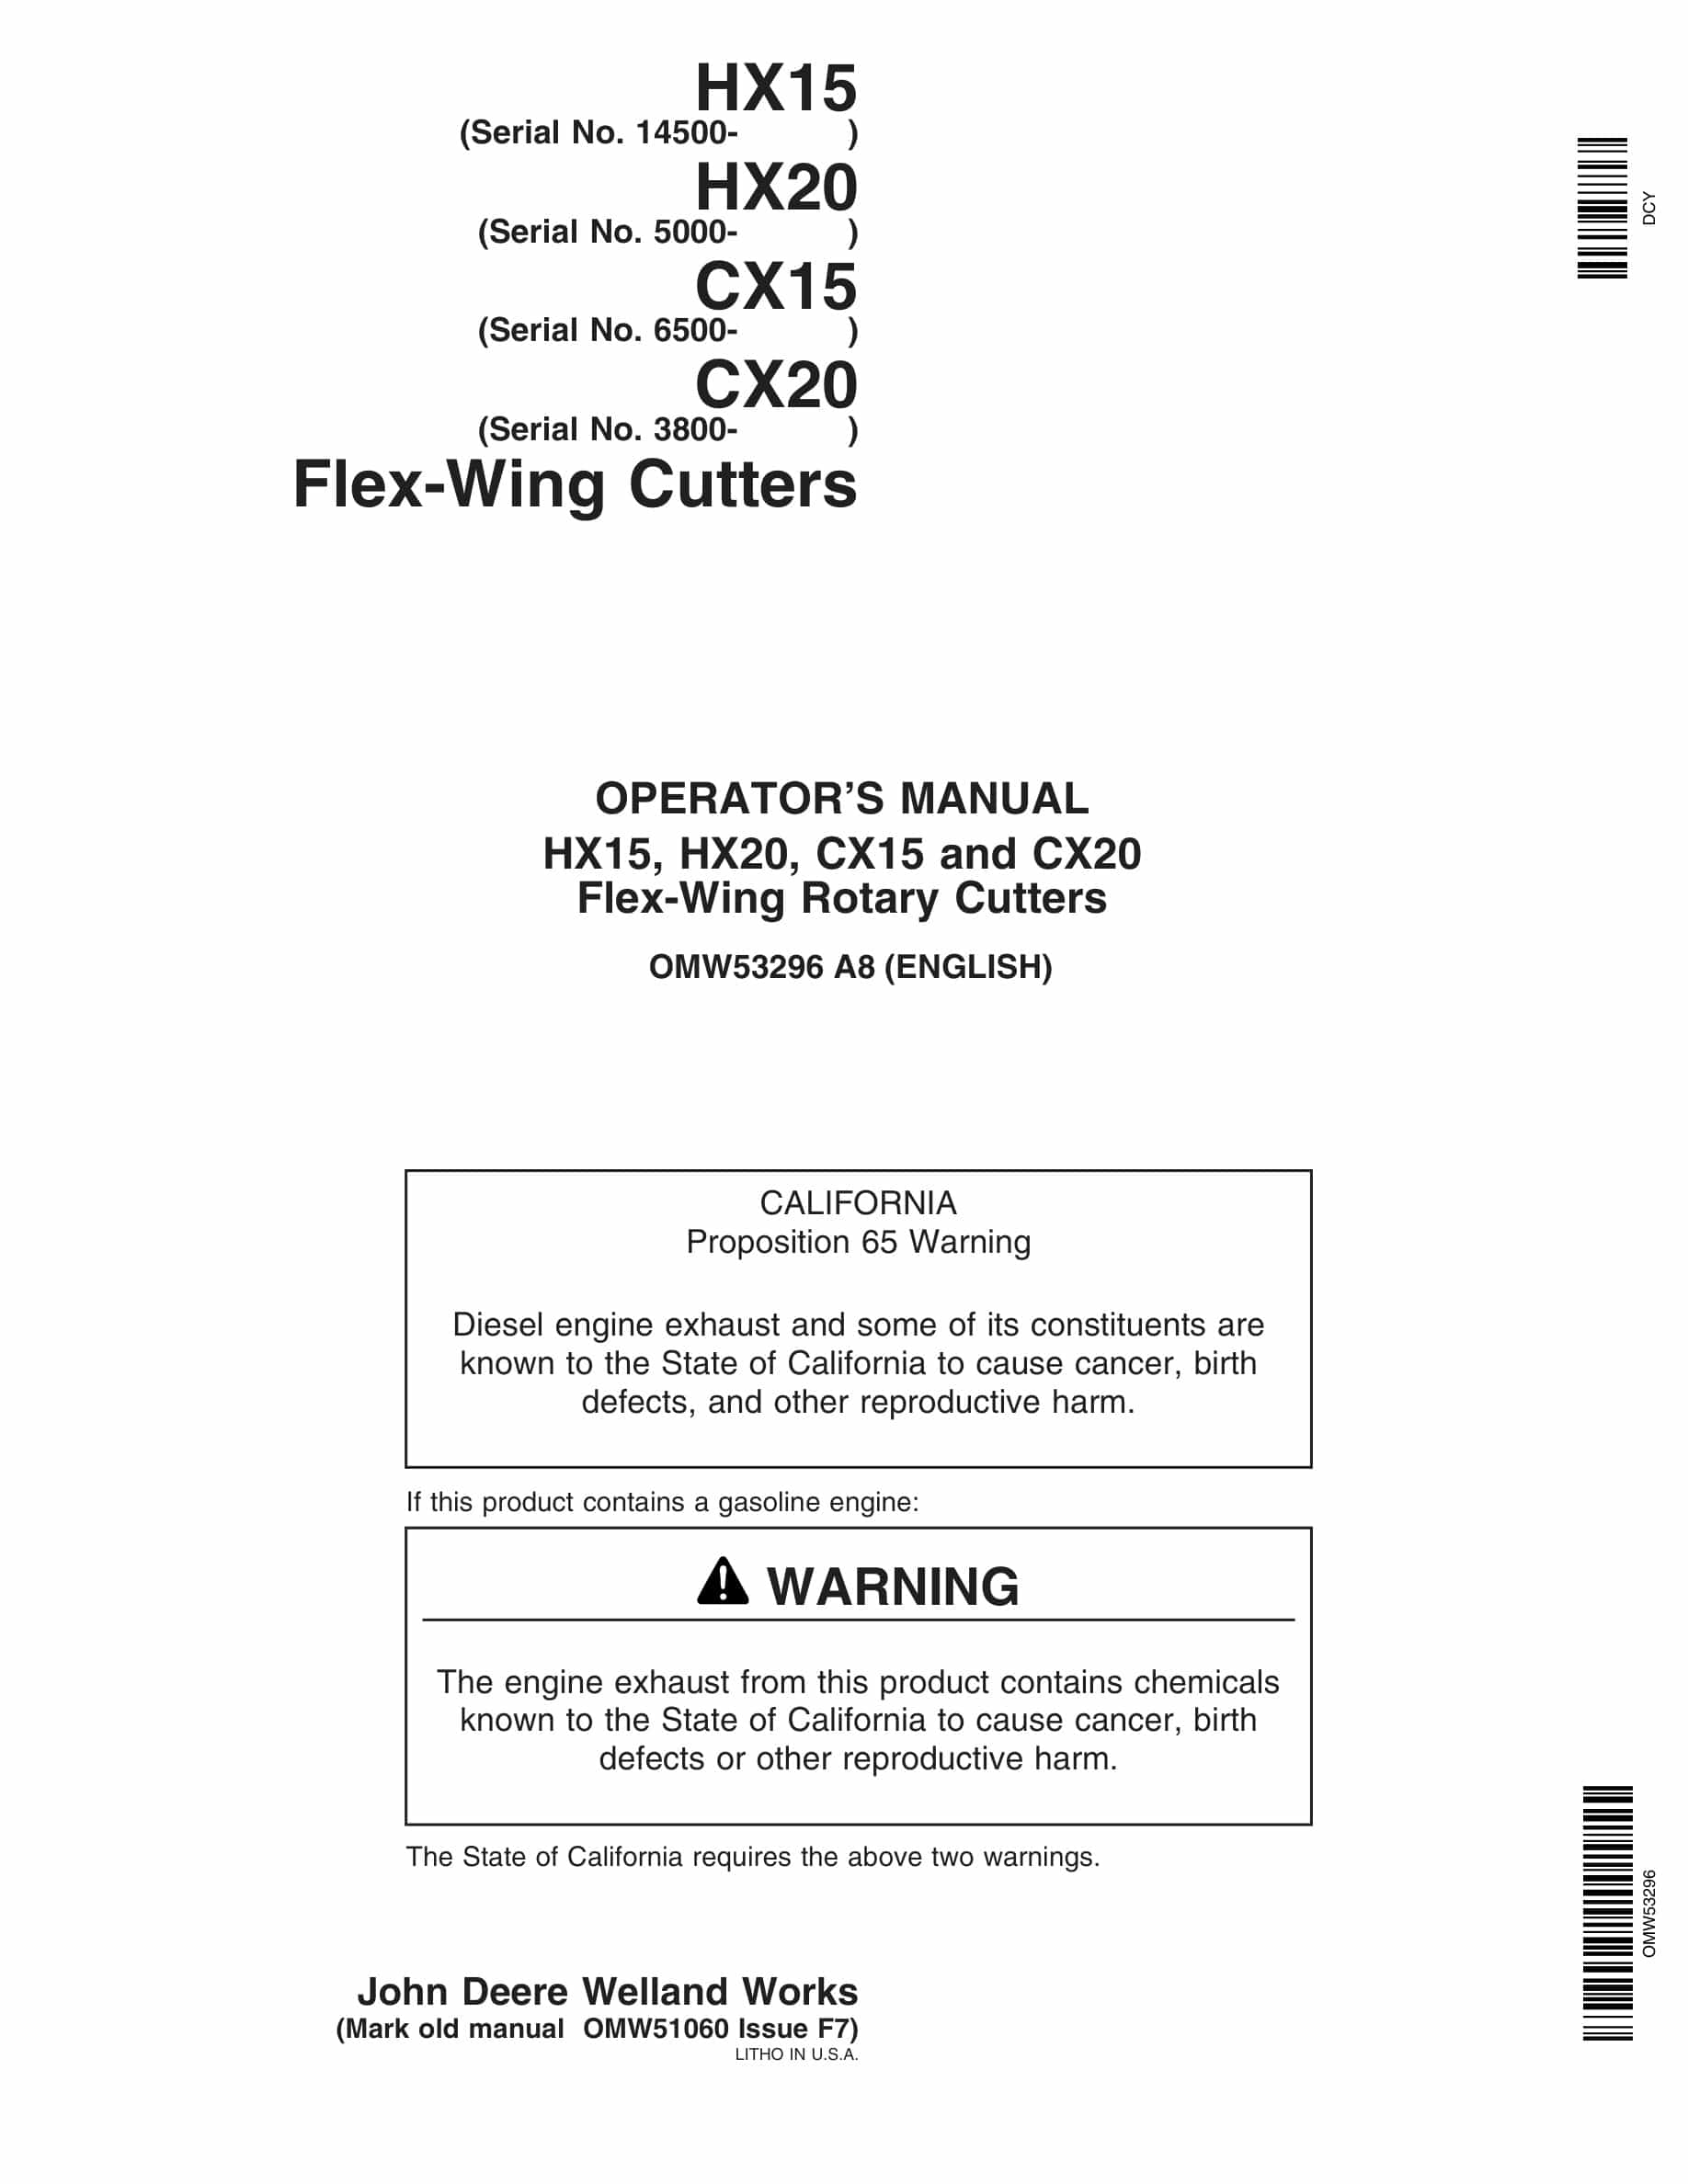 John Deere HX15, HX20, CX15 and CX20 Flex-Wing Rotary Cutter Operator Manual OMW53296-1